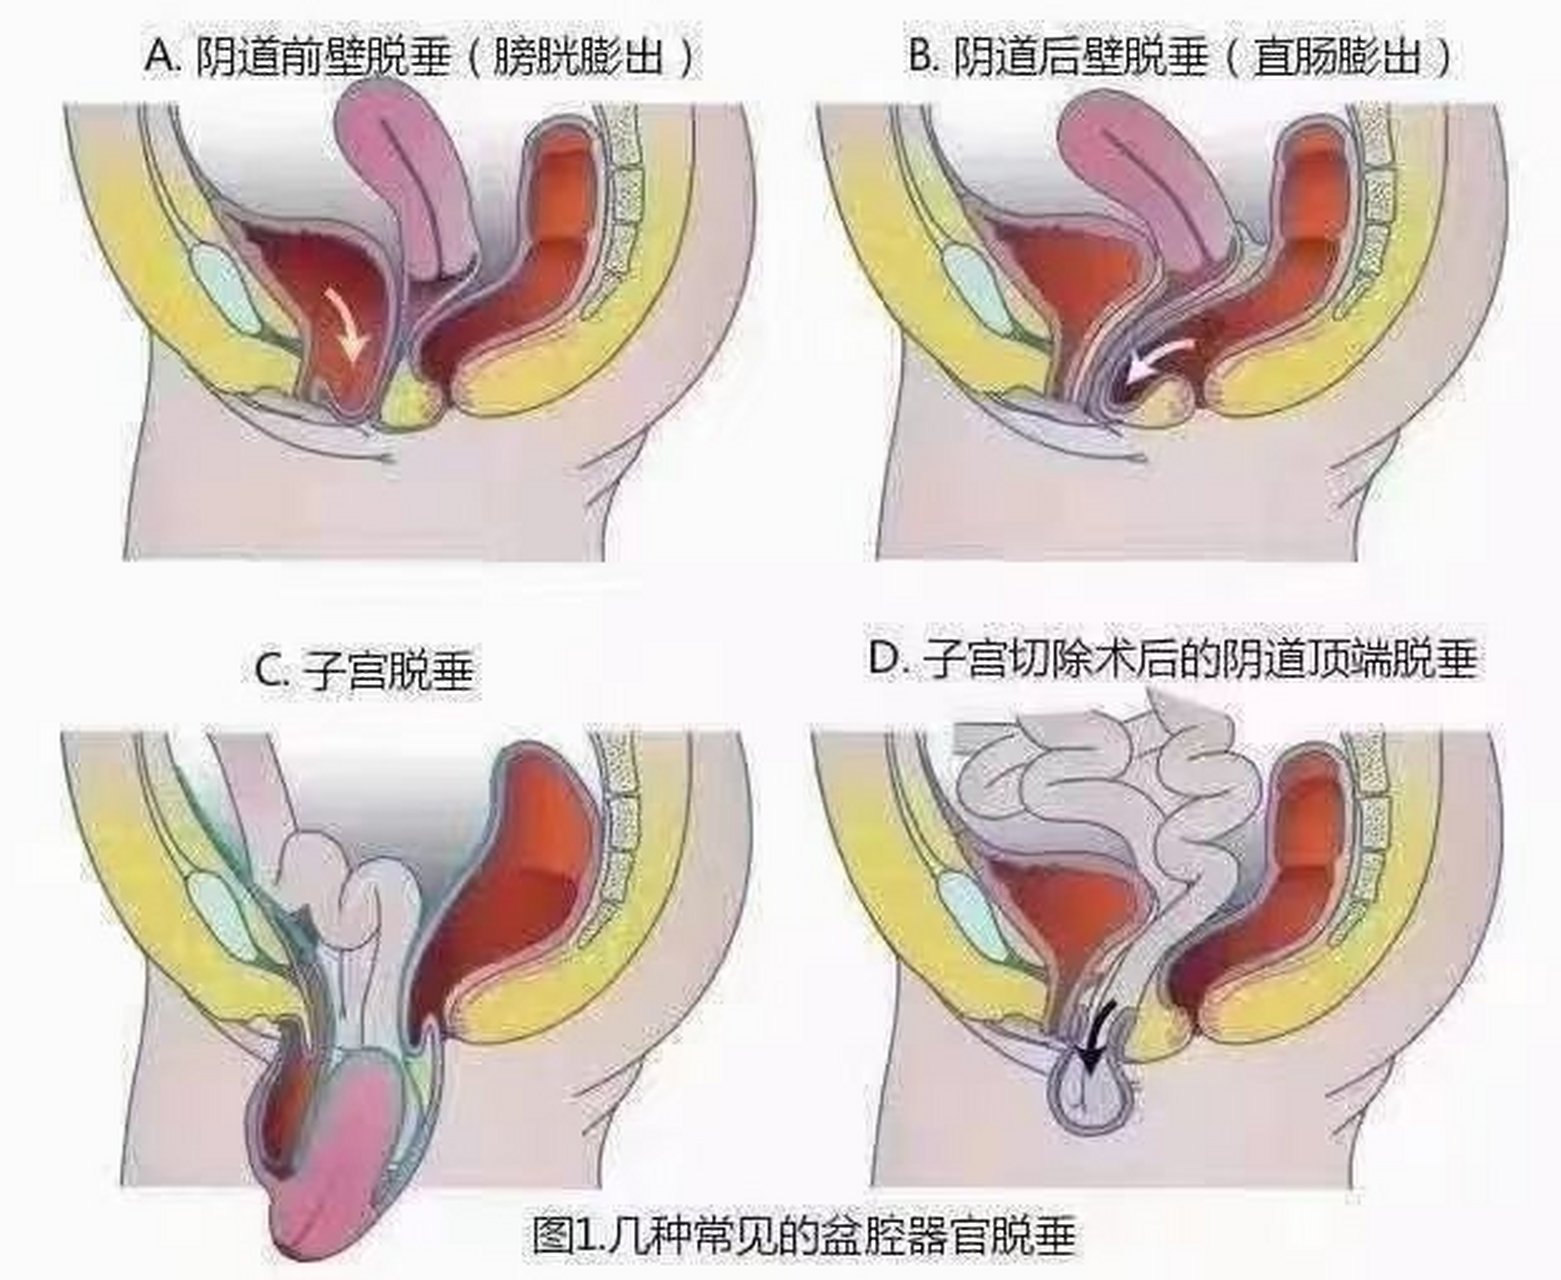 女性健康 脏器脱垂几种常见表现 阴道前壁膨出 阴道后壁膨出 子宫